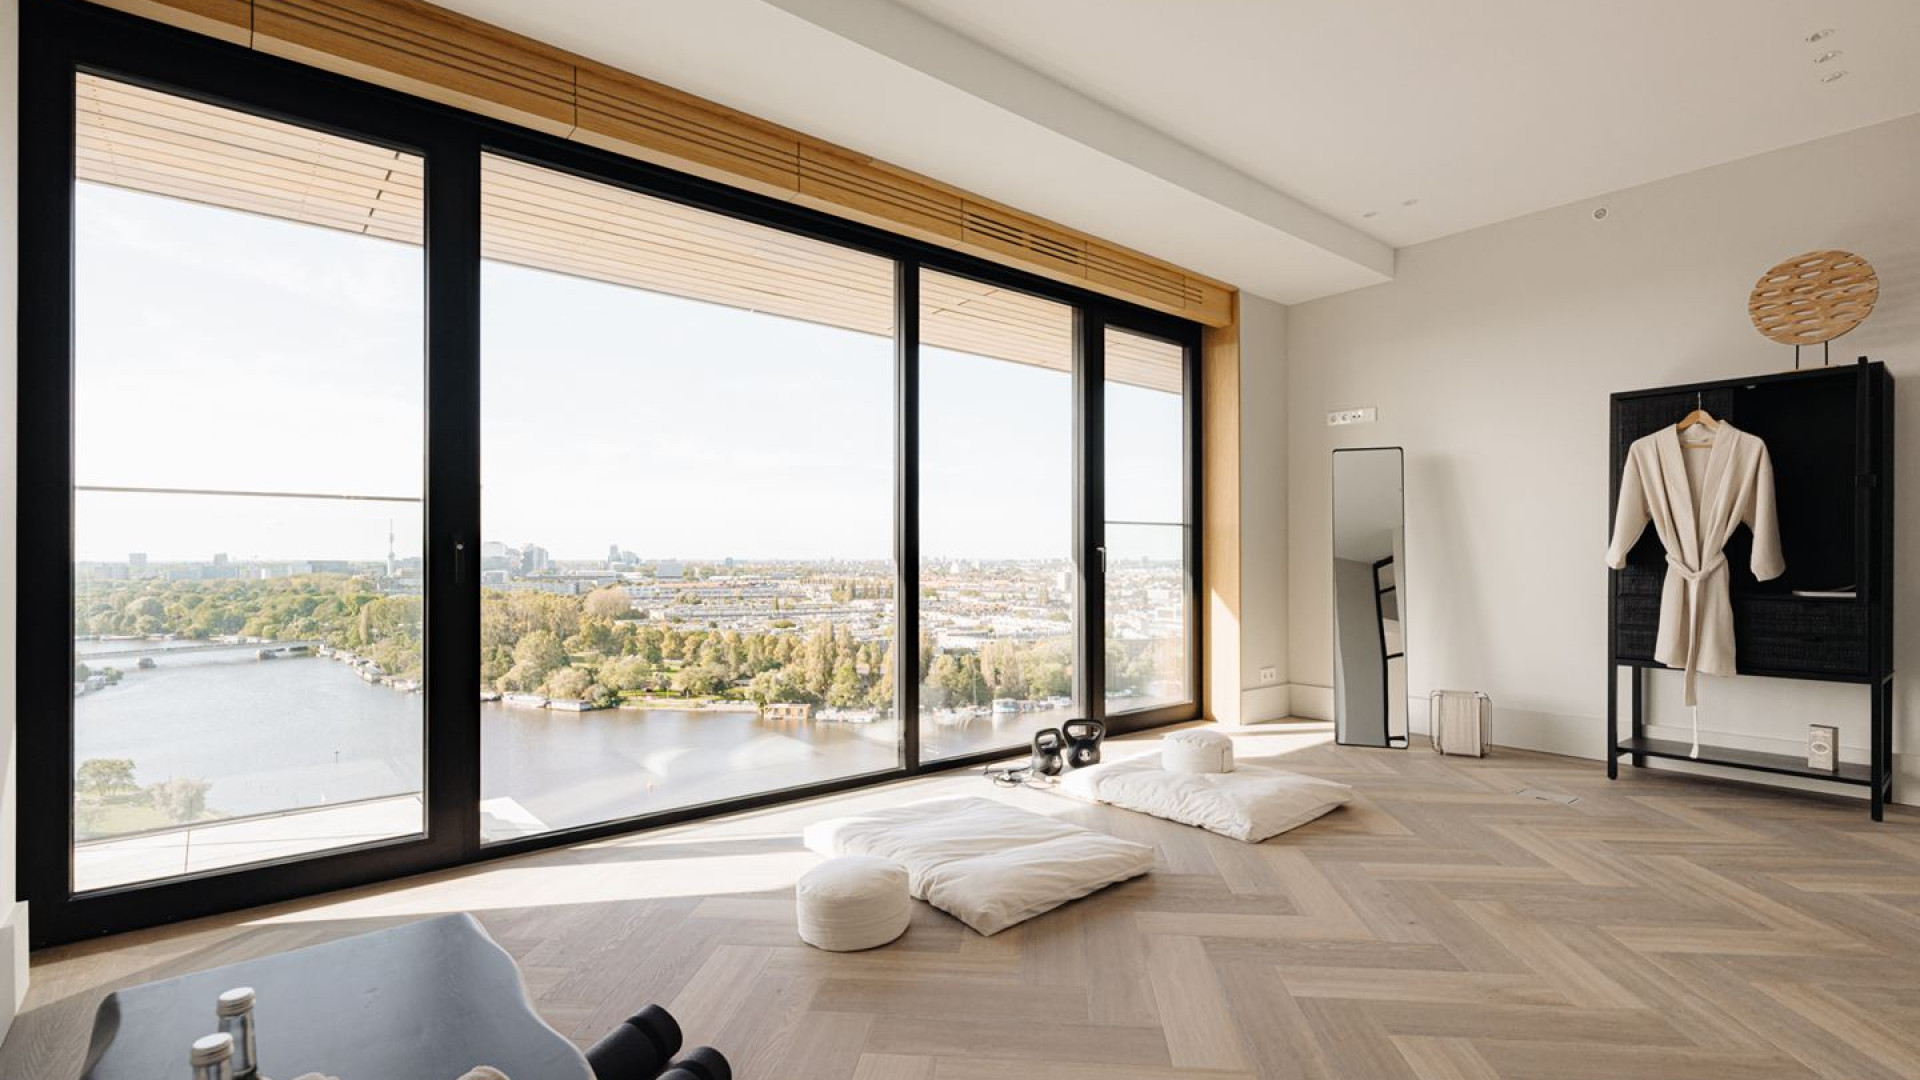 Voetballer Donyell Malen koopt dit bijna 5 miljoen kostende appartement met adembenemend uitzicht! Zie foto's 9